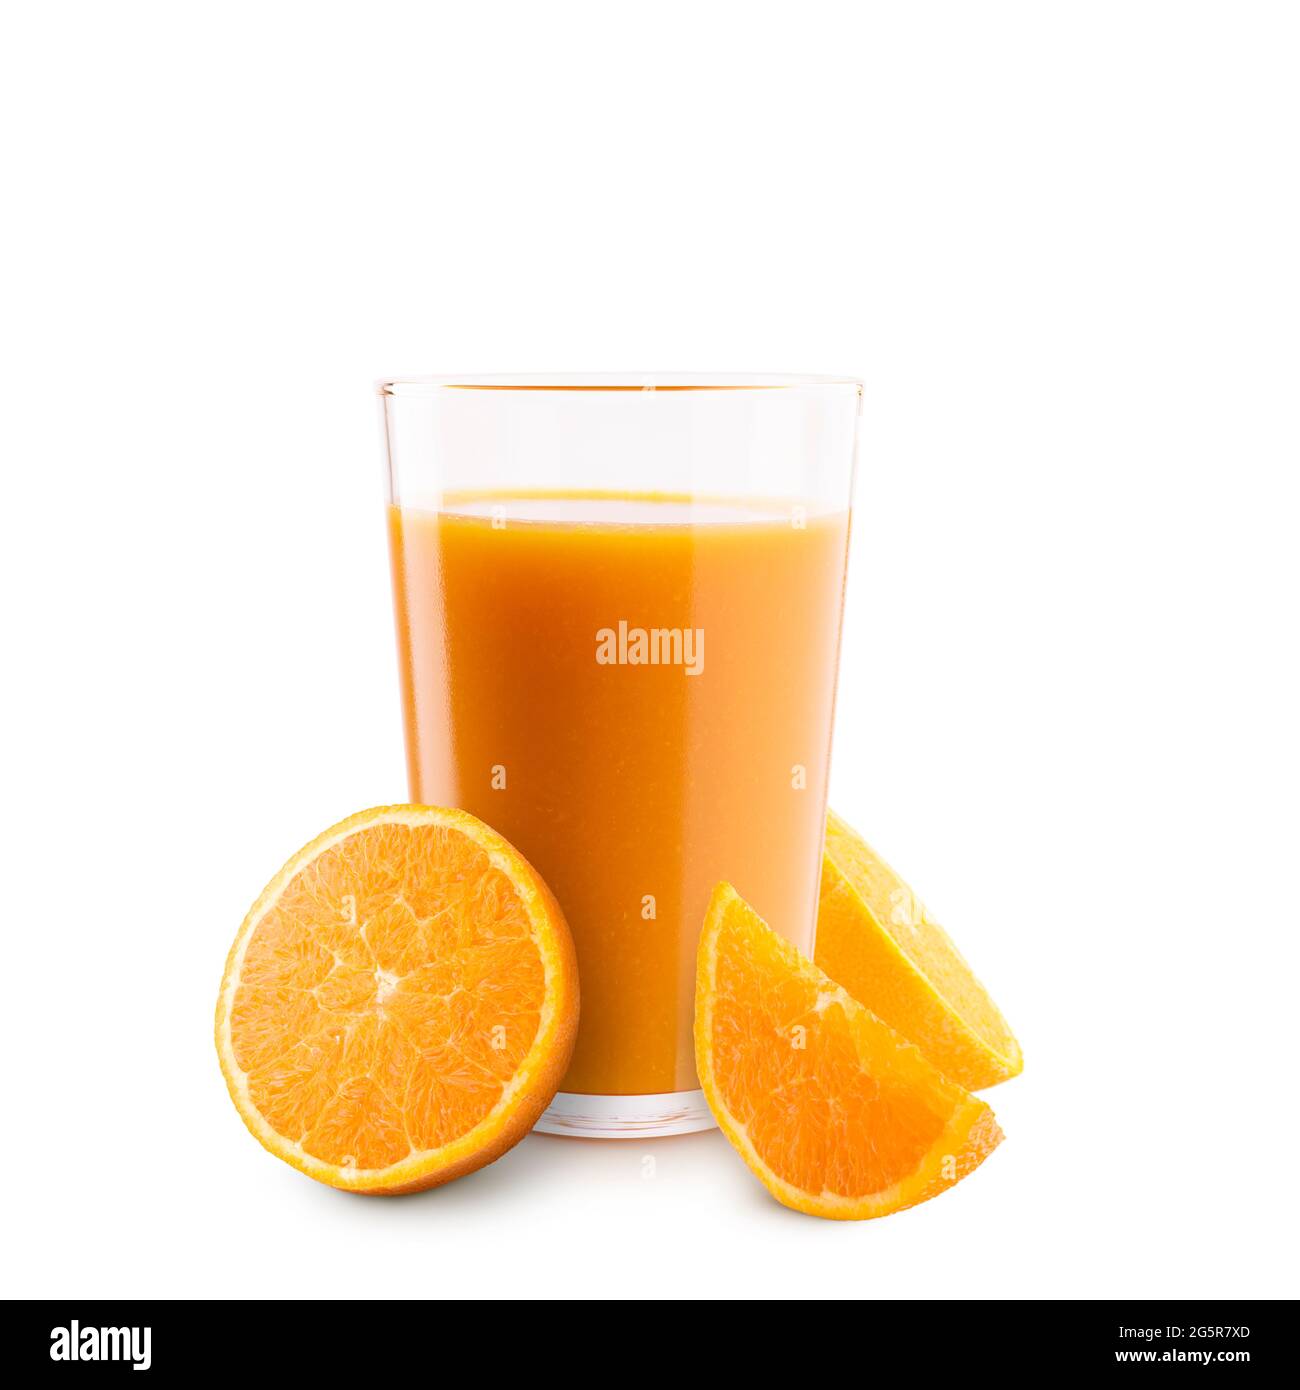 Glass of orange juice with orange slices on white background Stock Photo